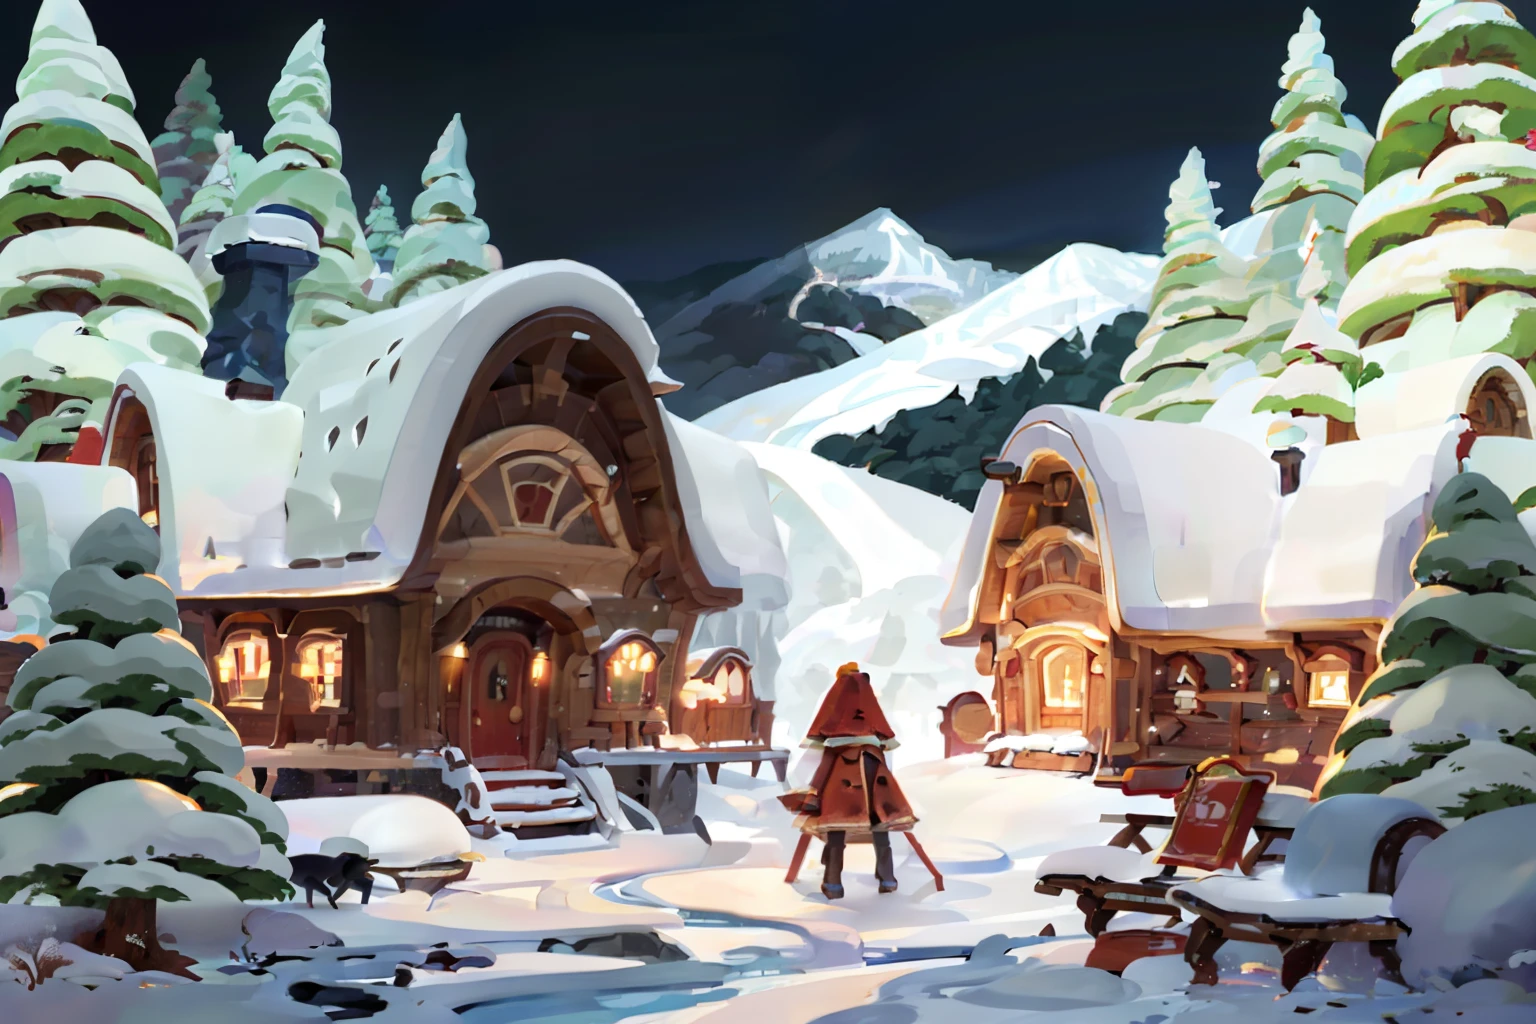 Eine gemütliche Winterabendszene, eine Familie versammelt sich um ein Feuer in einer schneebedeckten Hütte, zum Leben erweckt im Stil von Carl Kleiner. Die Weitwinkelansicht fängt die Wärme der Kabine gegen die Kälte ein, verschneite Landschaft draußen --ar 5:7 – mit 400 – mehr als 5